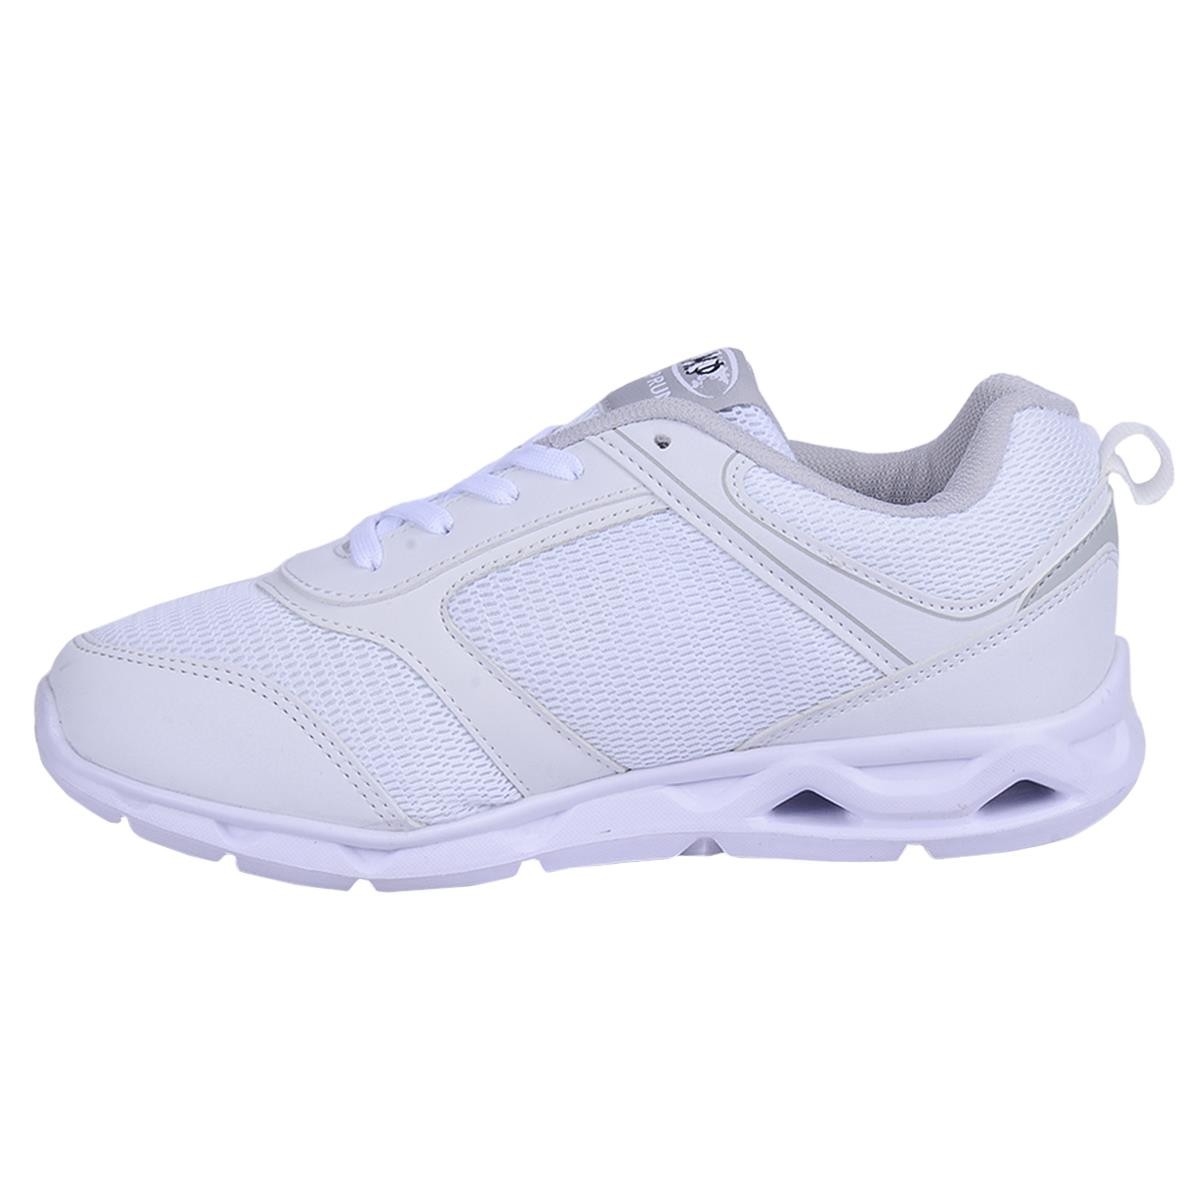 Flo 201-7404 Beyaz Loyal Yazlık Yürüyüş Koşu Bayan Spor Ayakkabı. 1